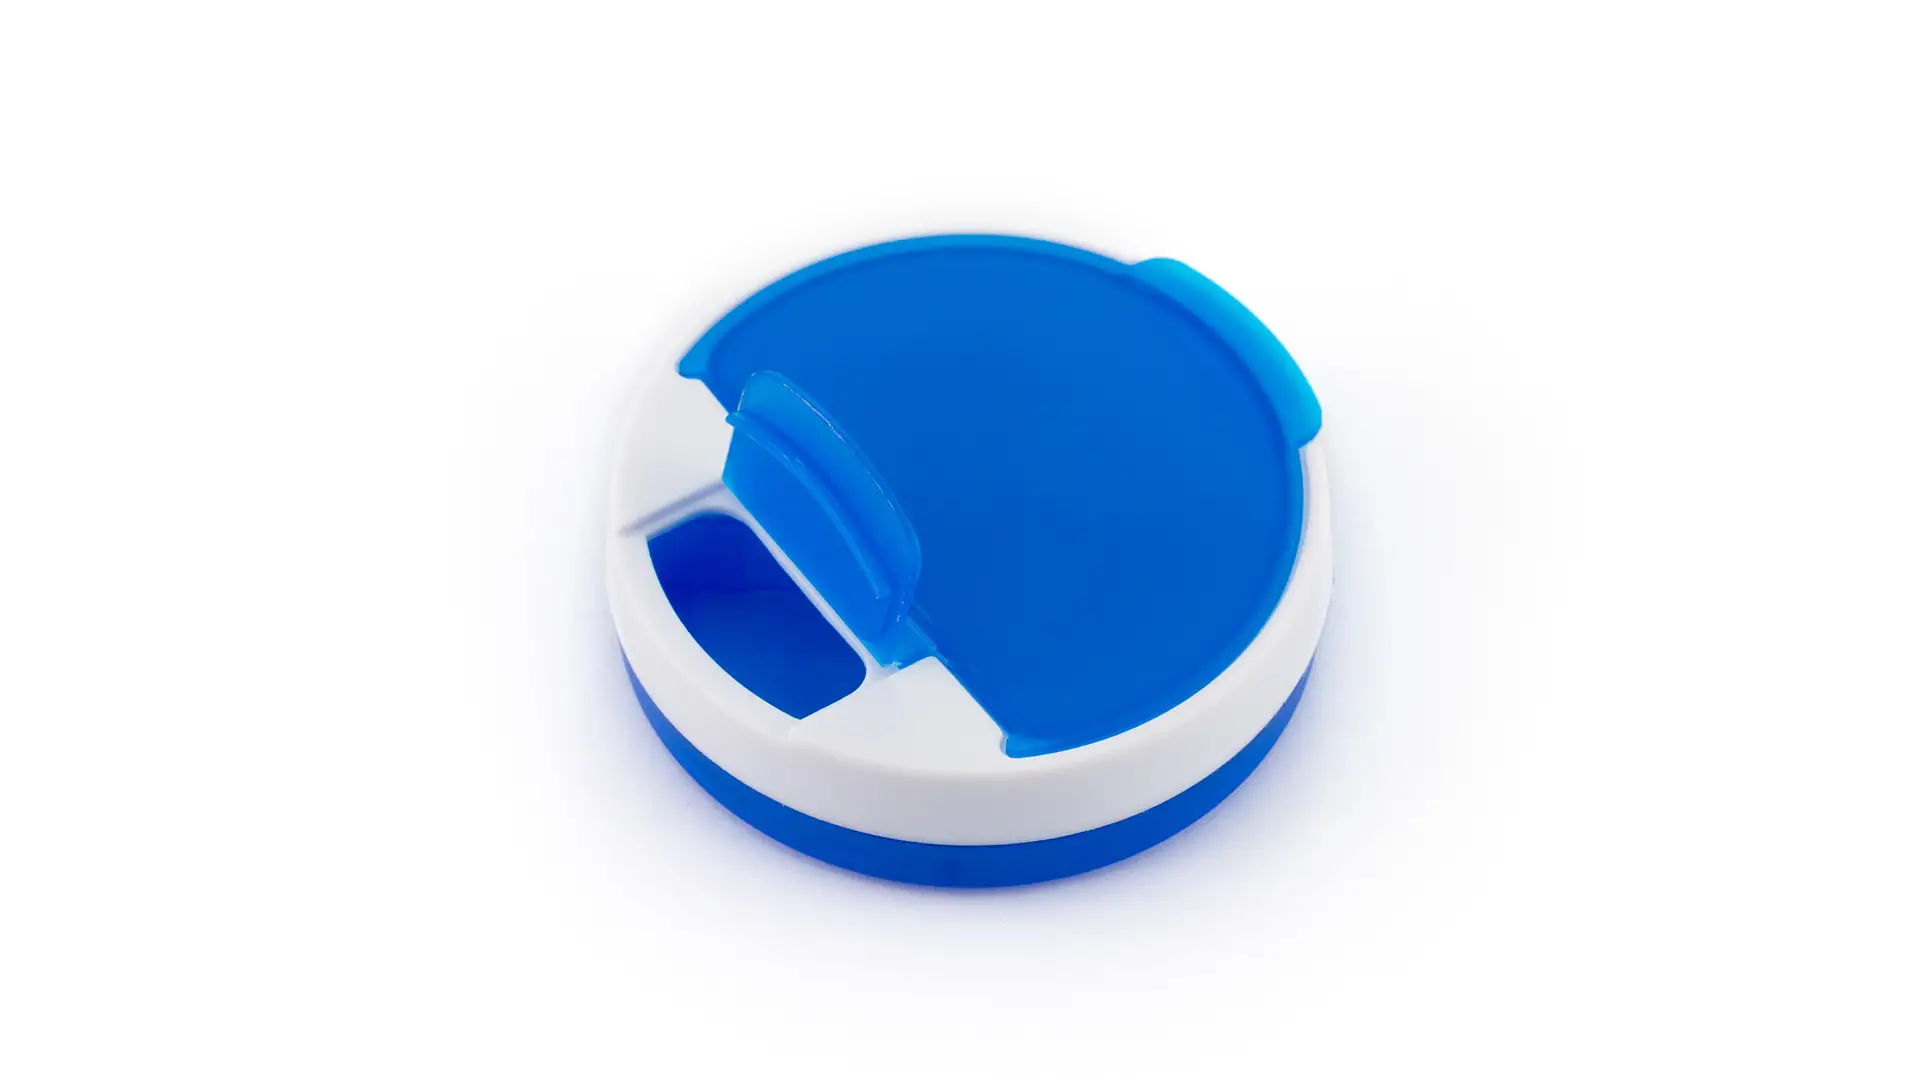 Porta Pillole 4 Scomparti con Dispenser Personalizzato Ideale come Gadget per Medici, Studi Medici, Farmacie